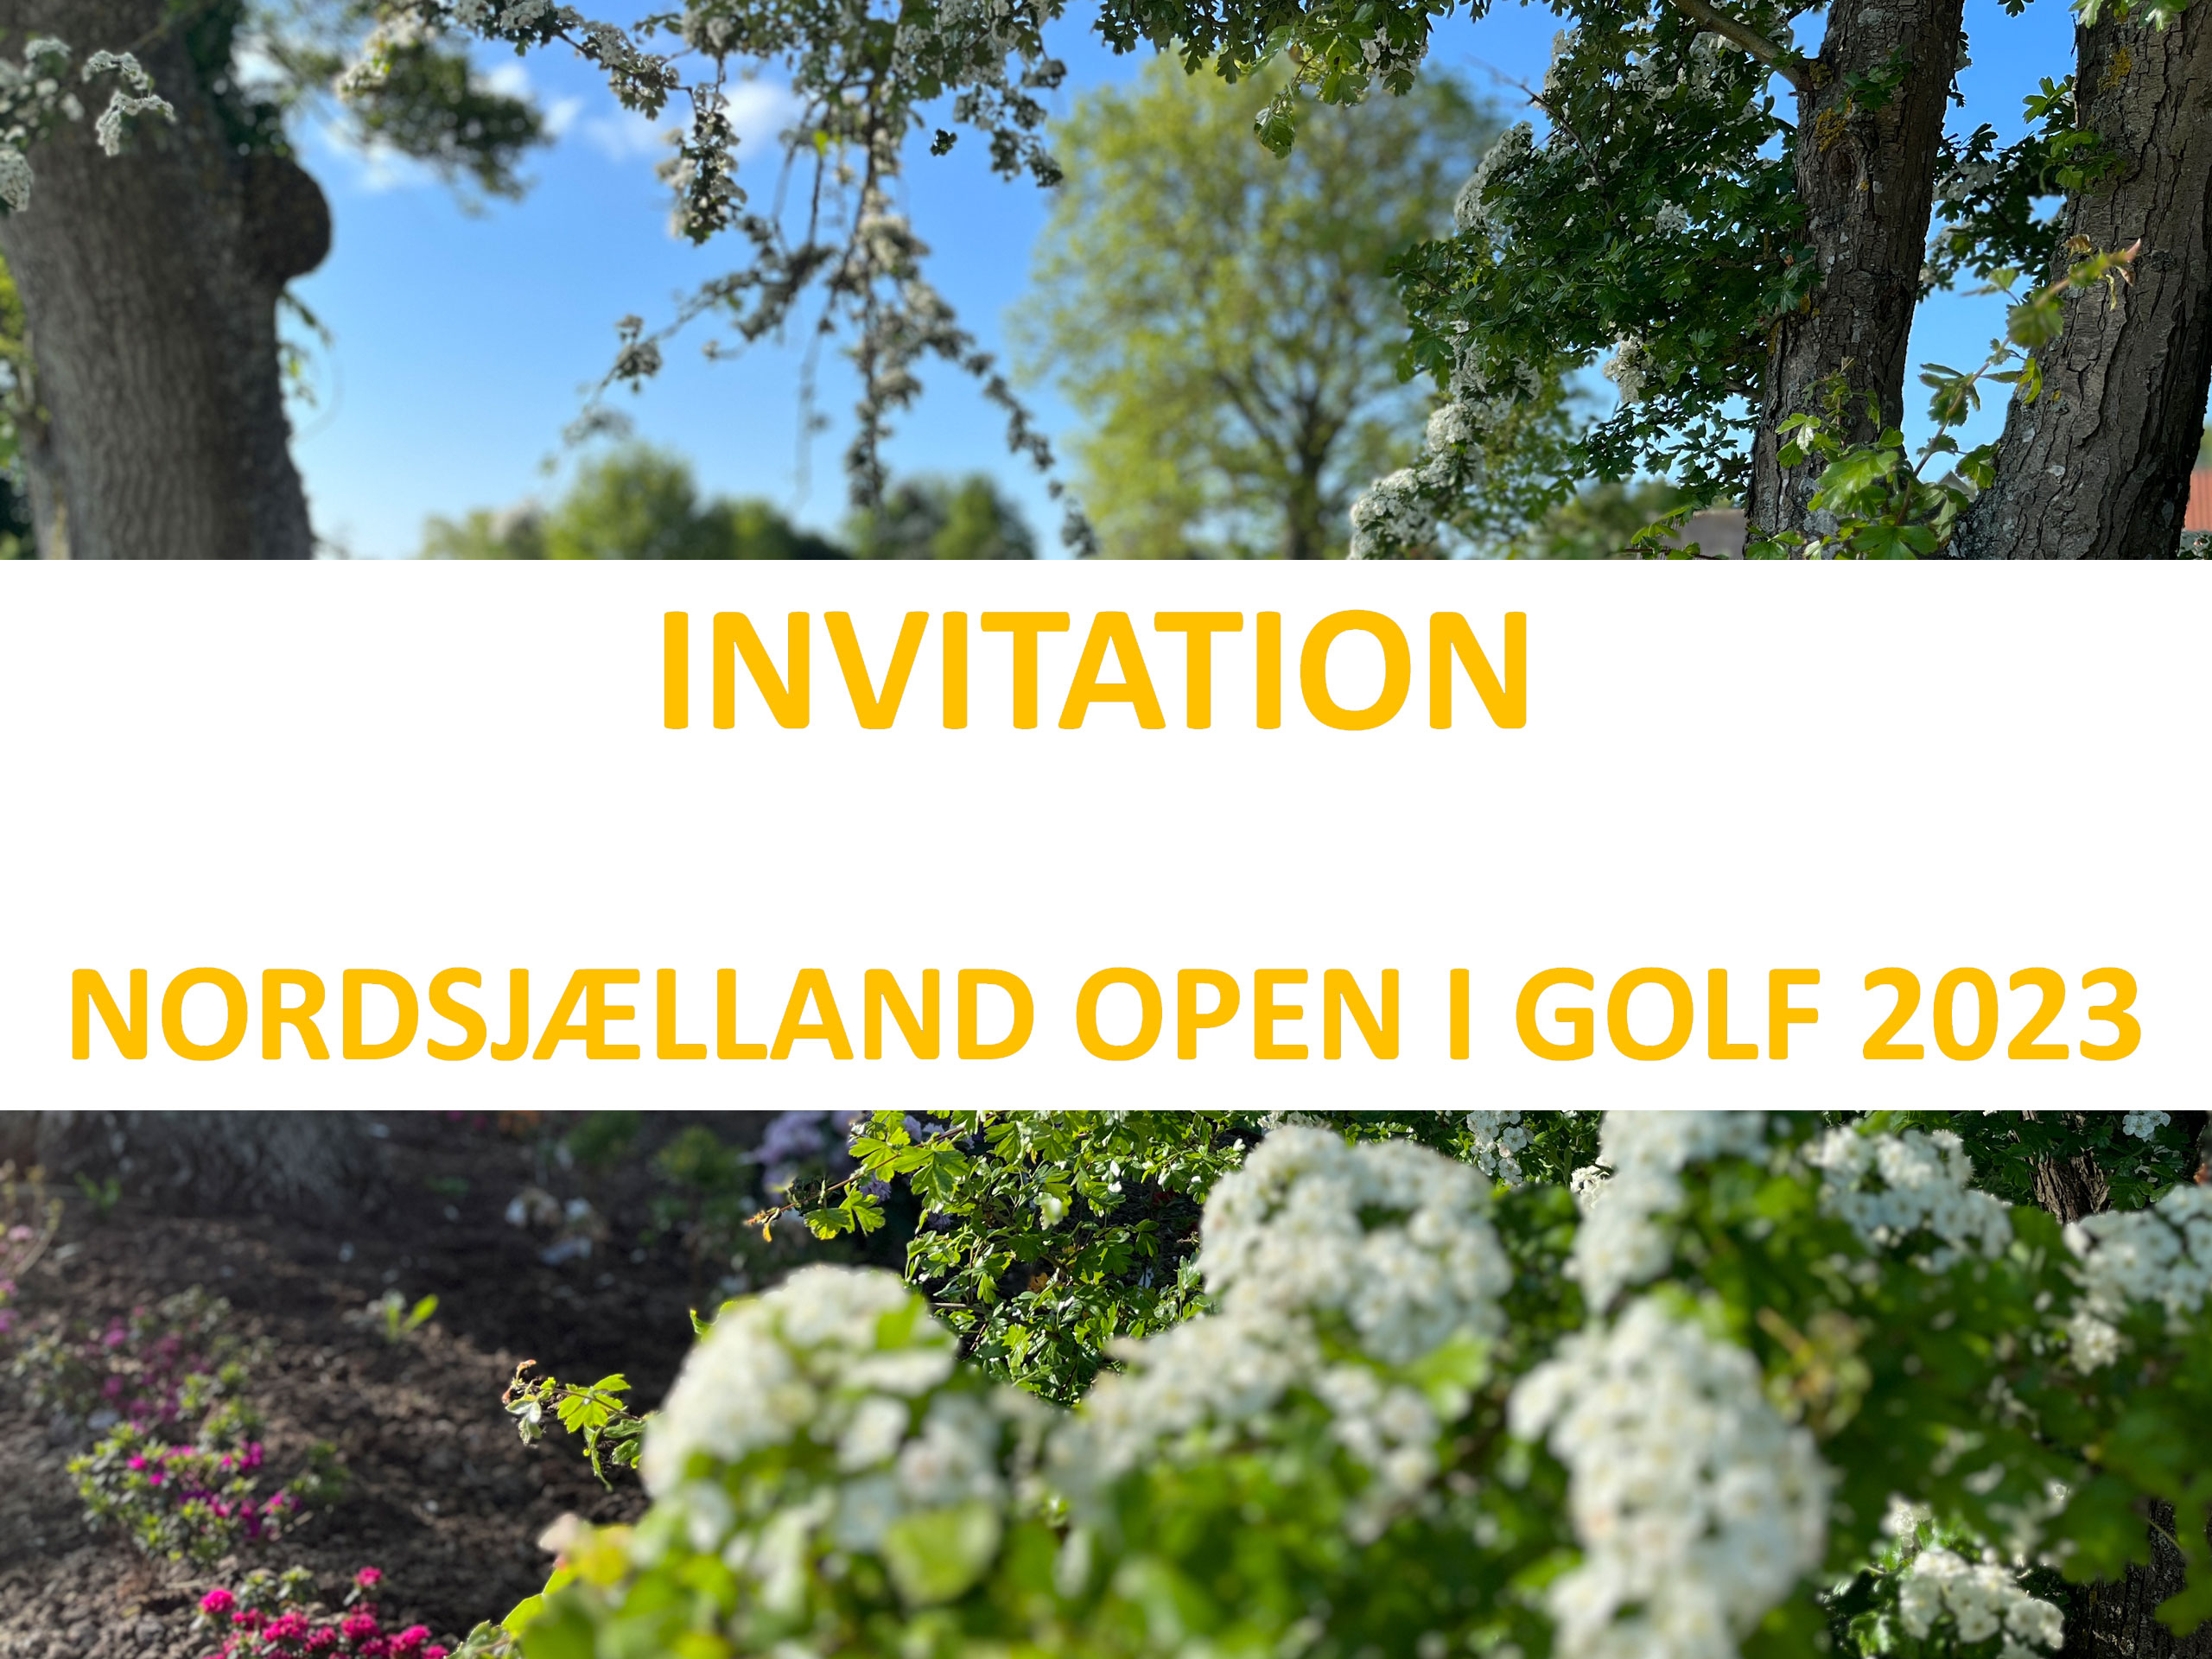 Nordsjællands Politi inviterer til Nordsjælland Open i Golf 2023 - denne gang i Gilleleje Golfklub 15.9